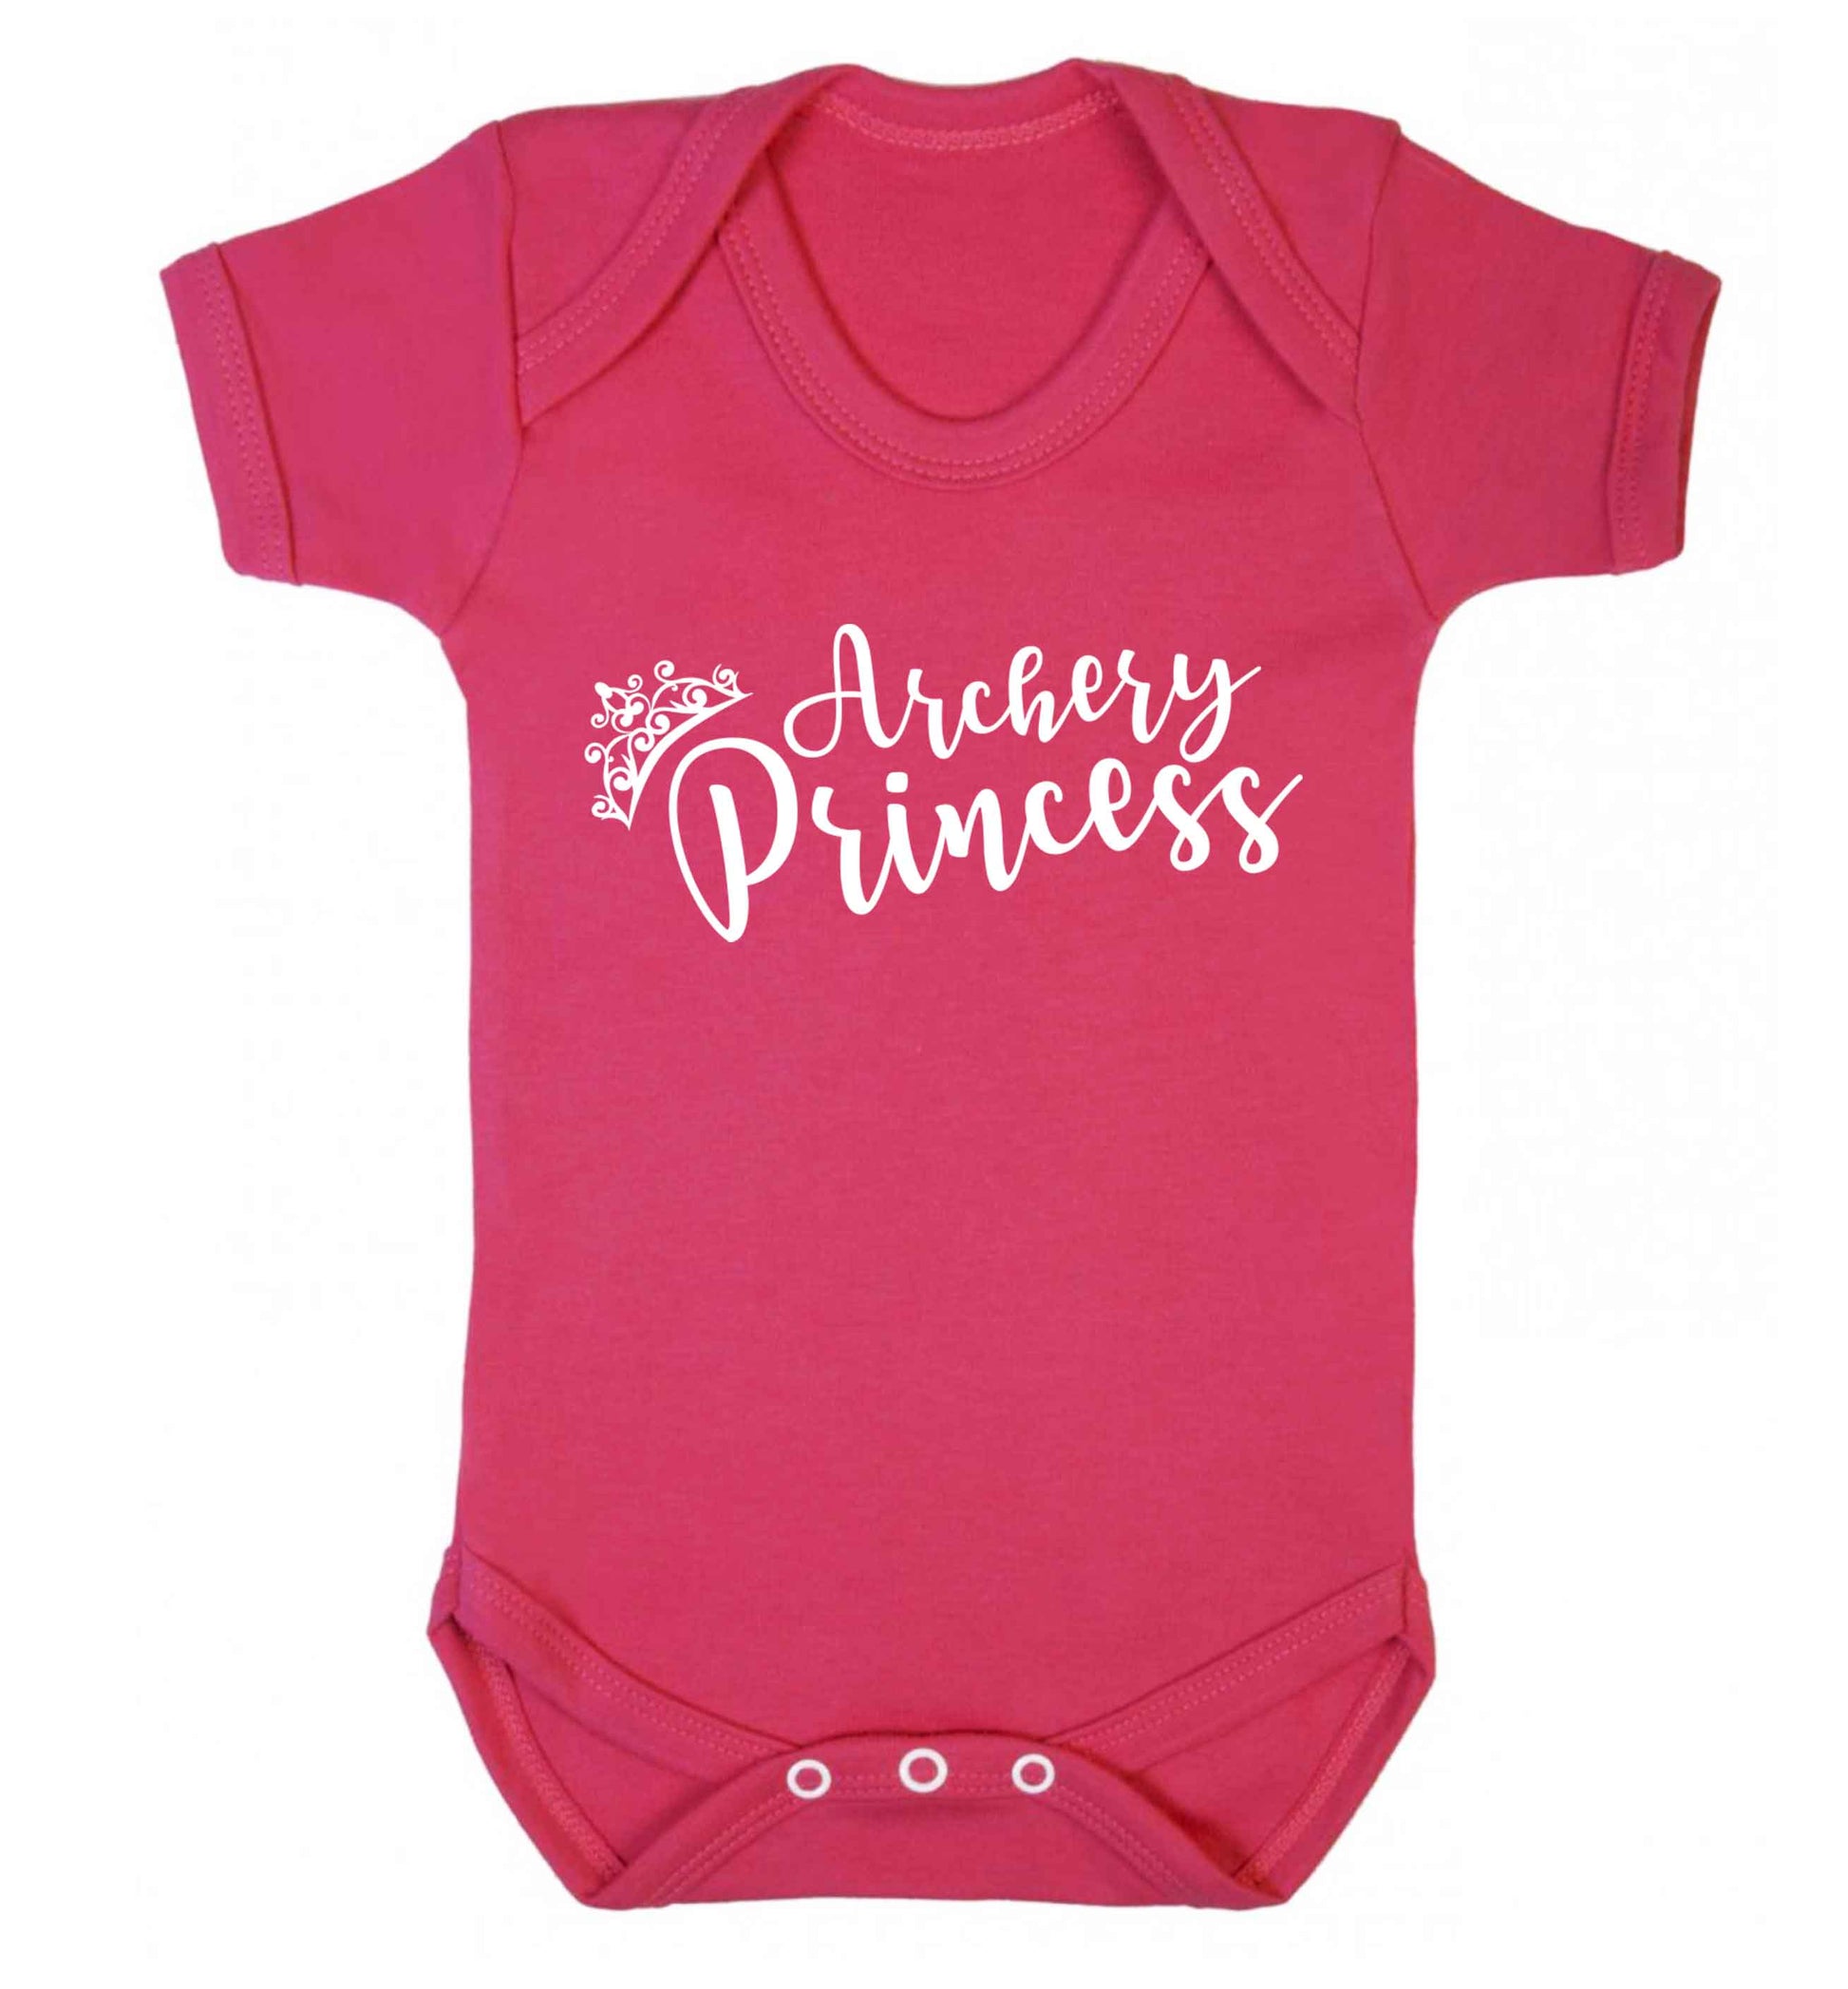 Archery princess Baby Vest dark pink 18-24 months